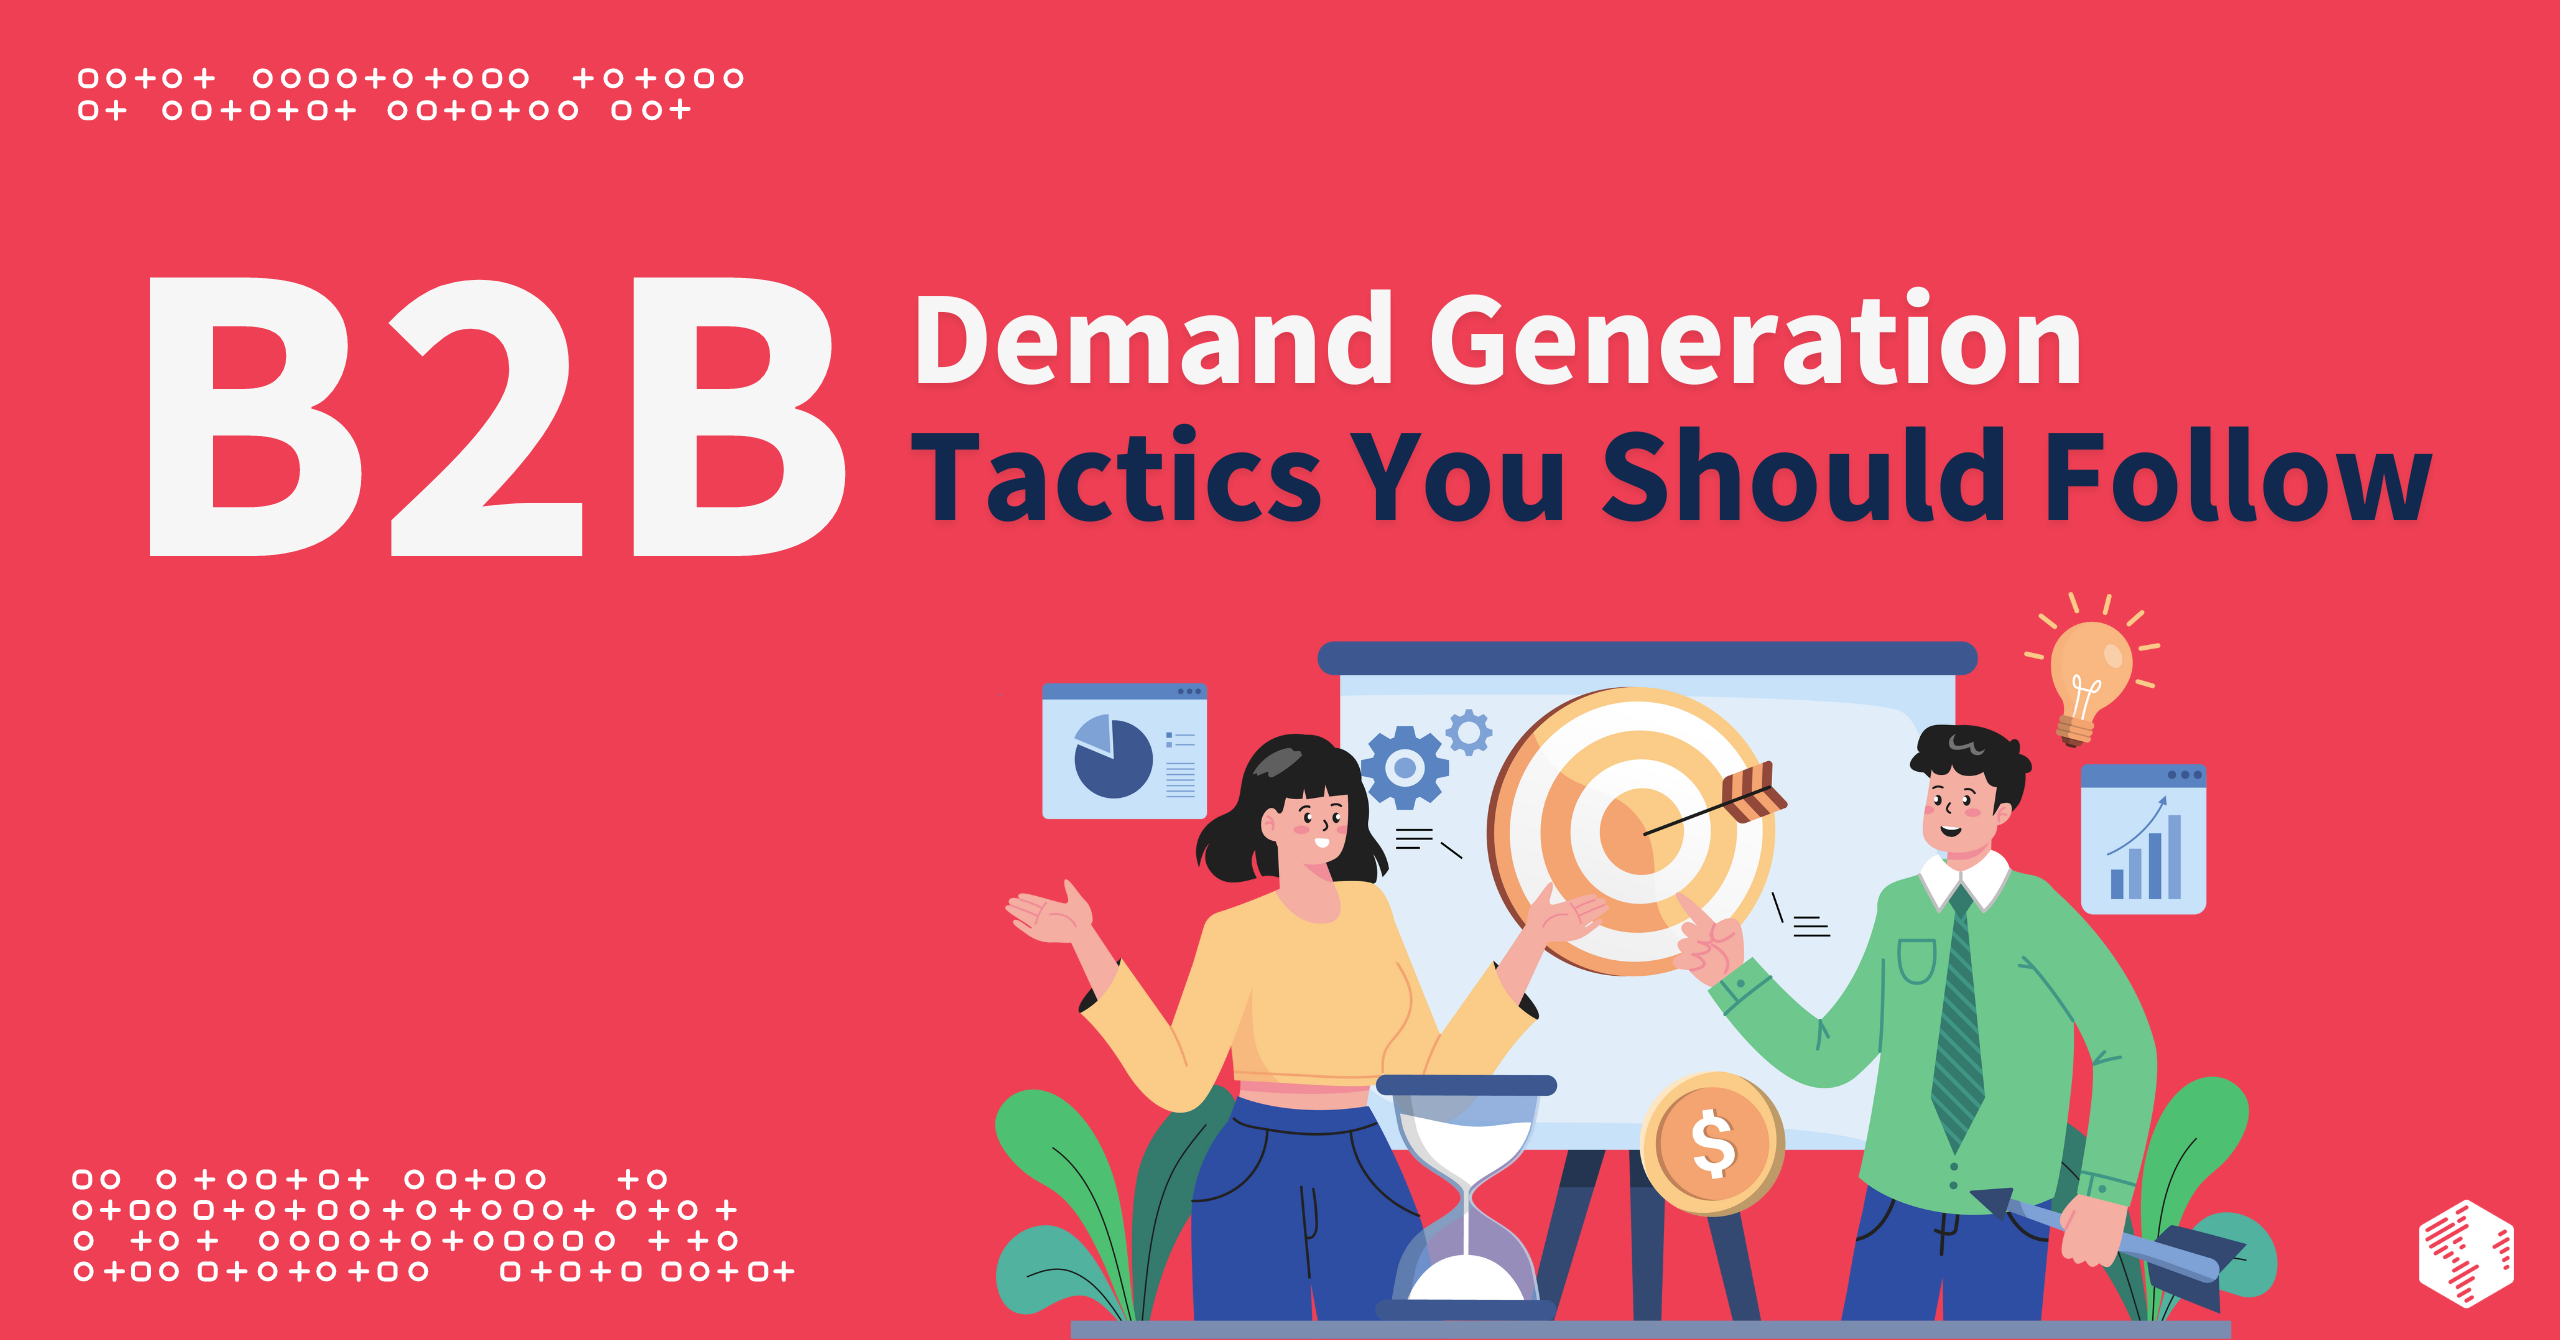 B2B Demand Generation Tactics